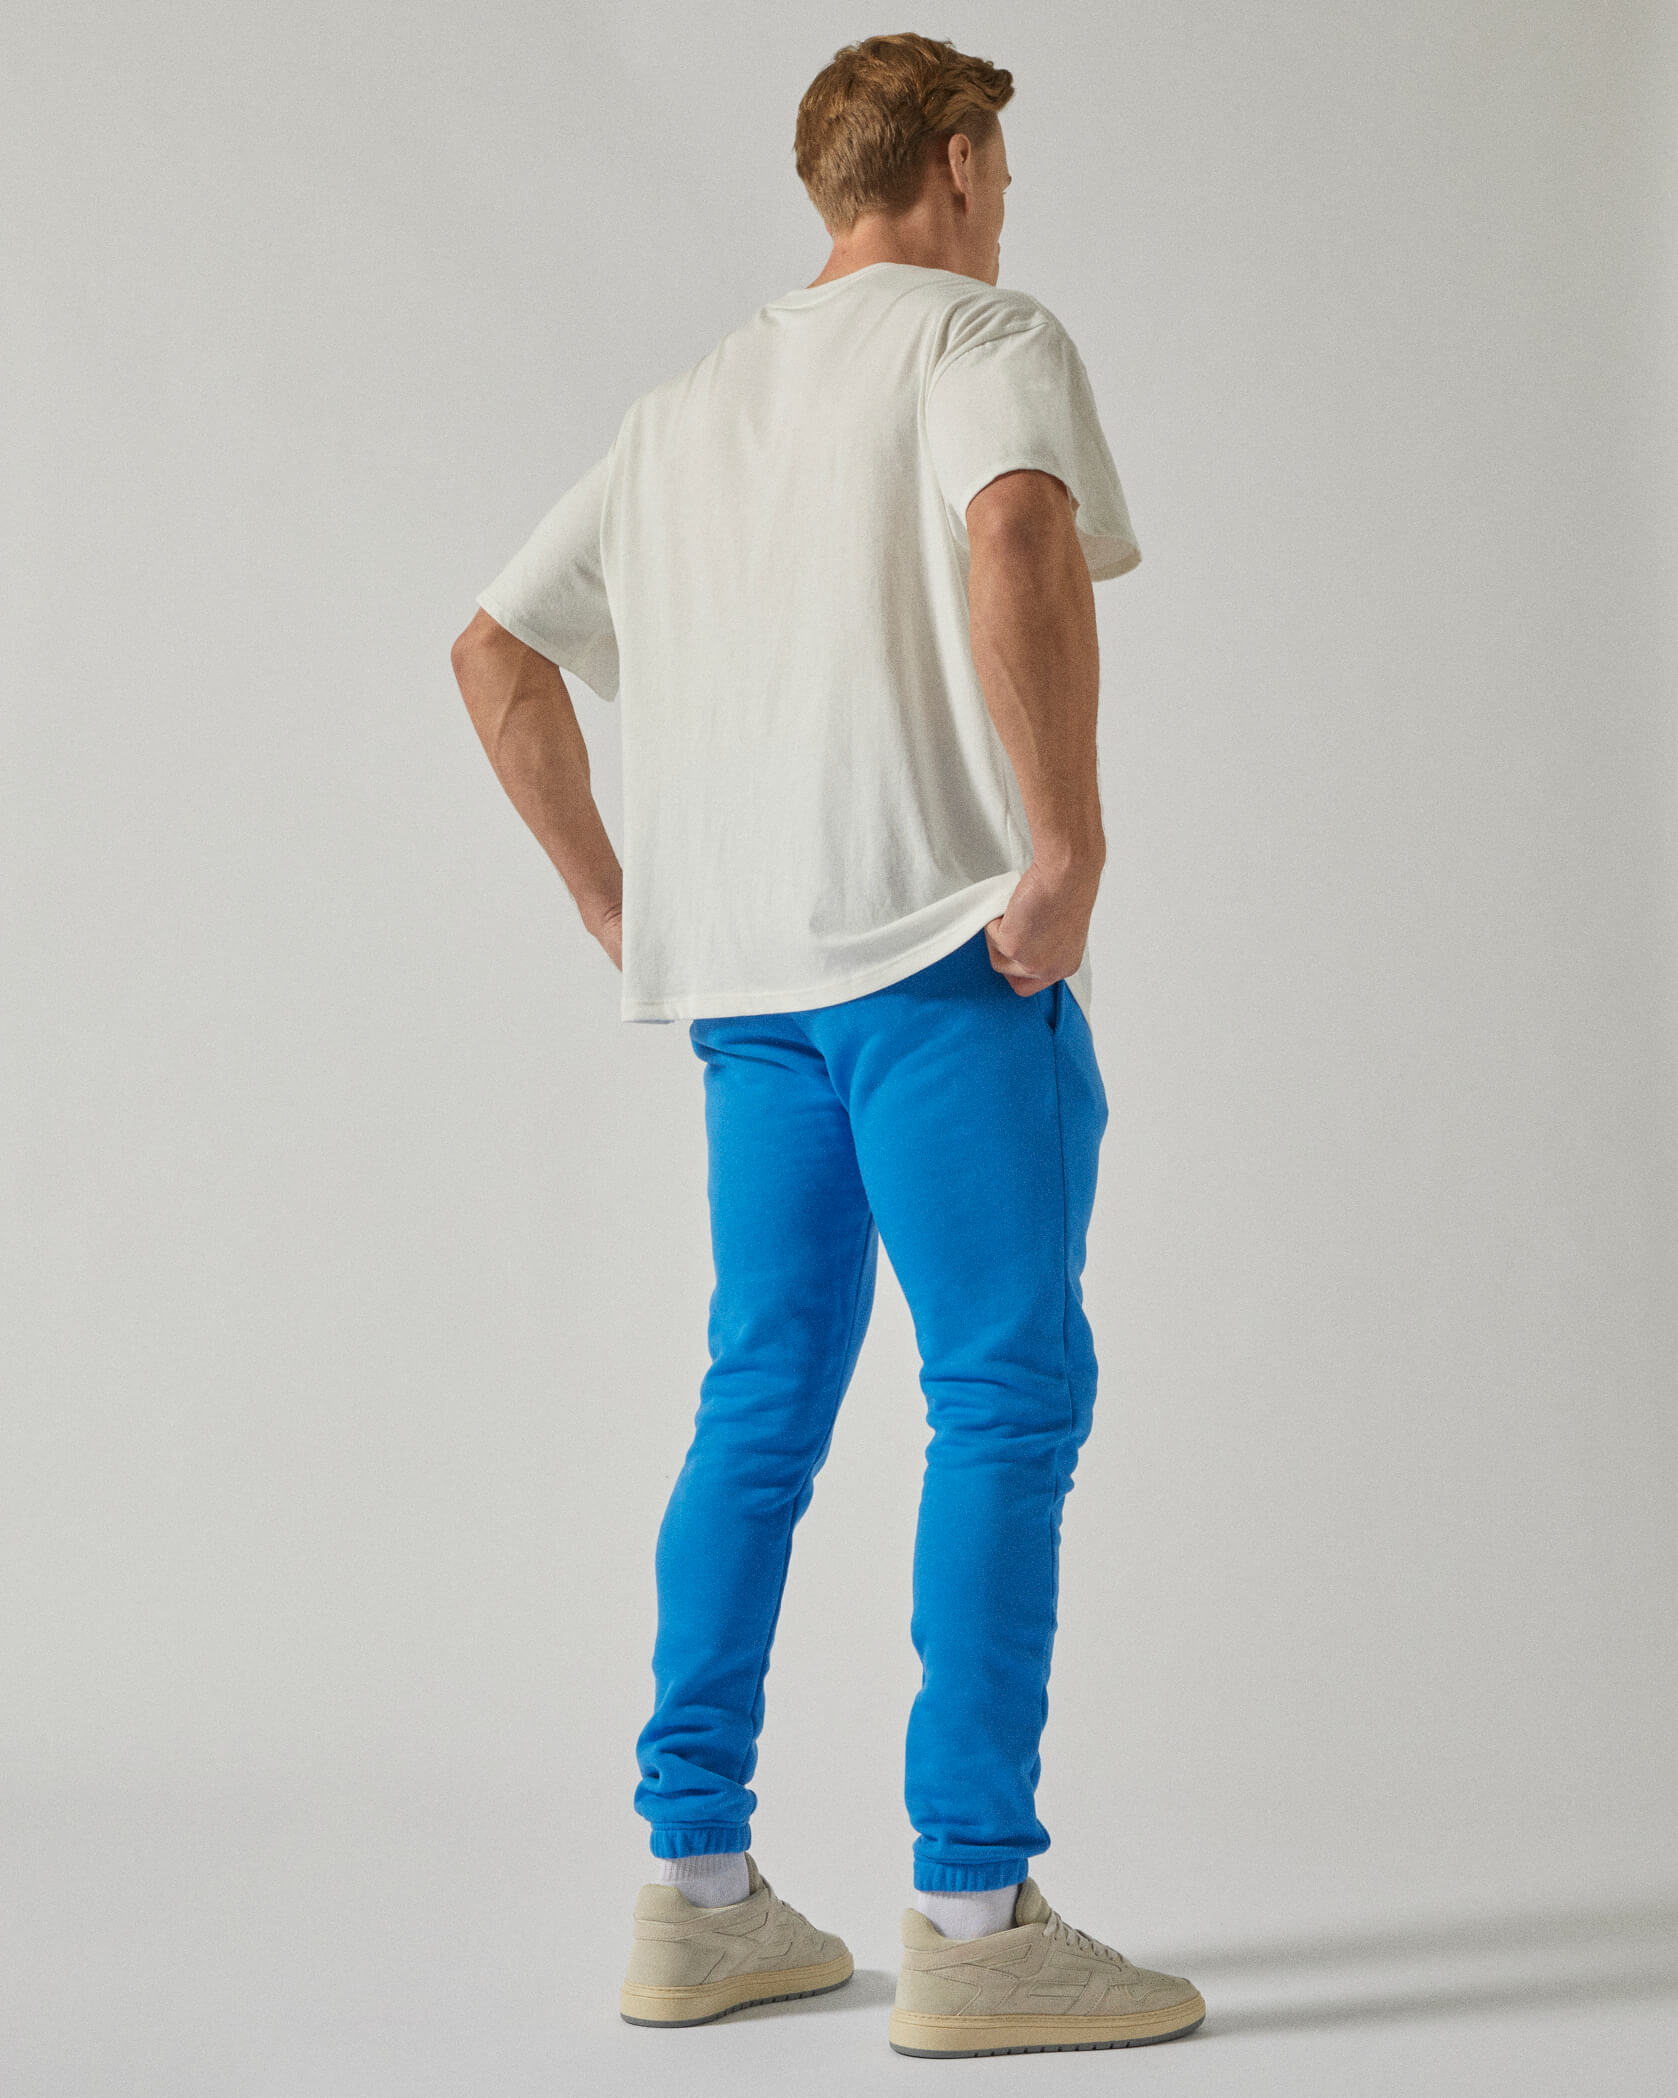 Blue Twinzz Joggers on male model